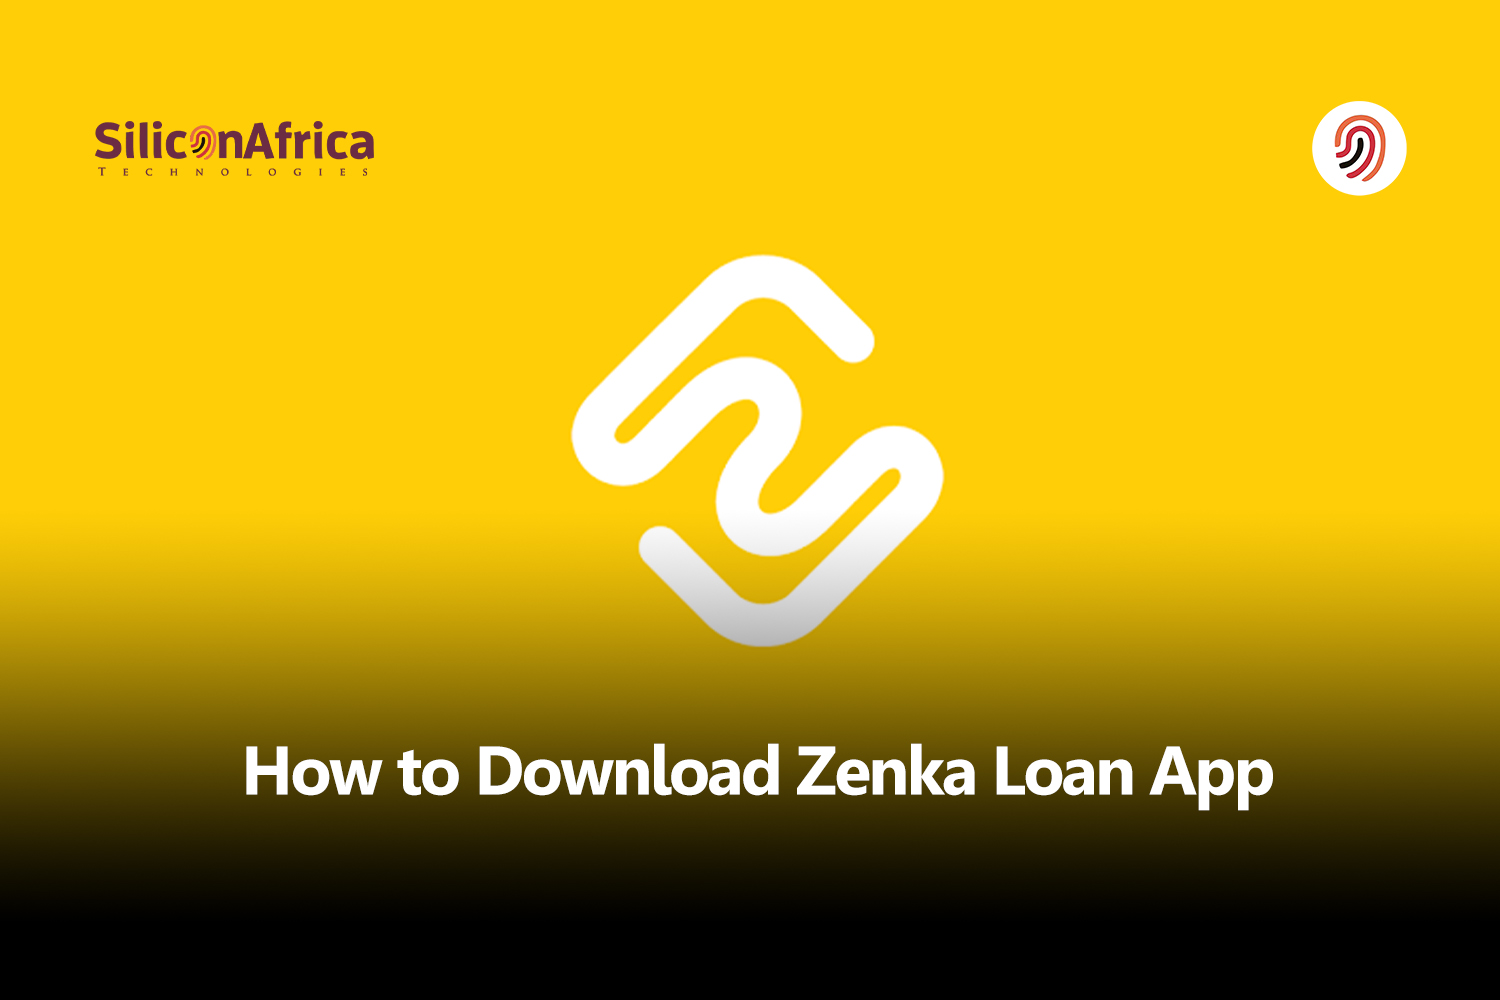 How to Download the Zenka Loan App